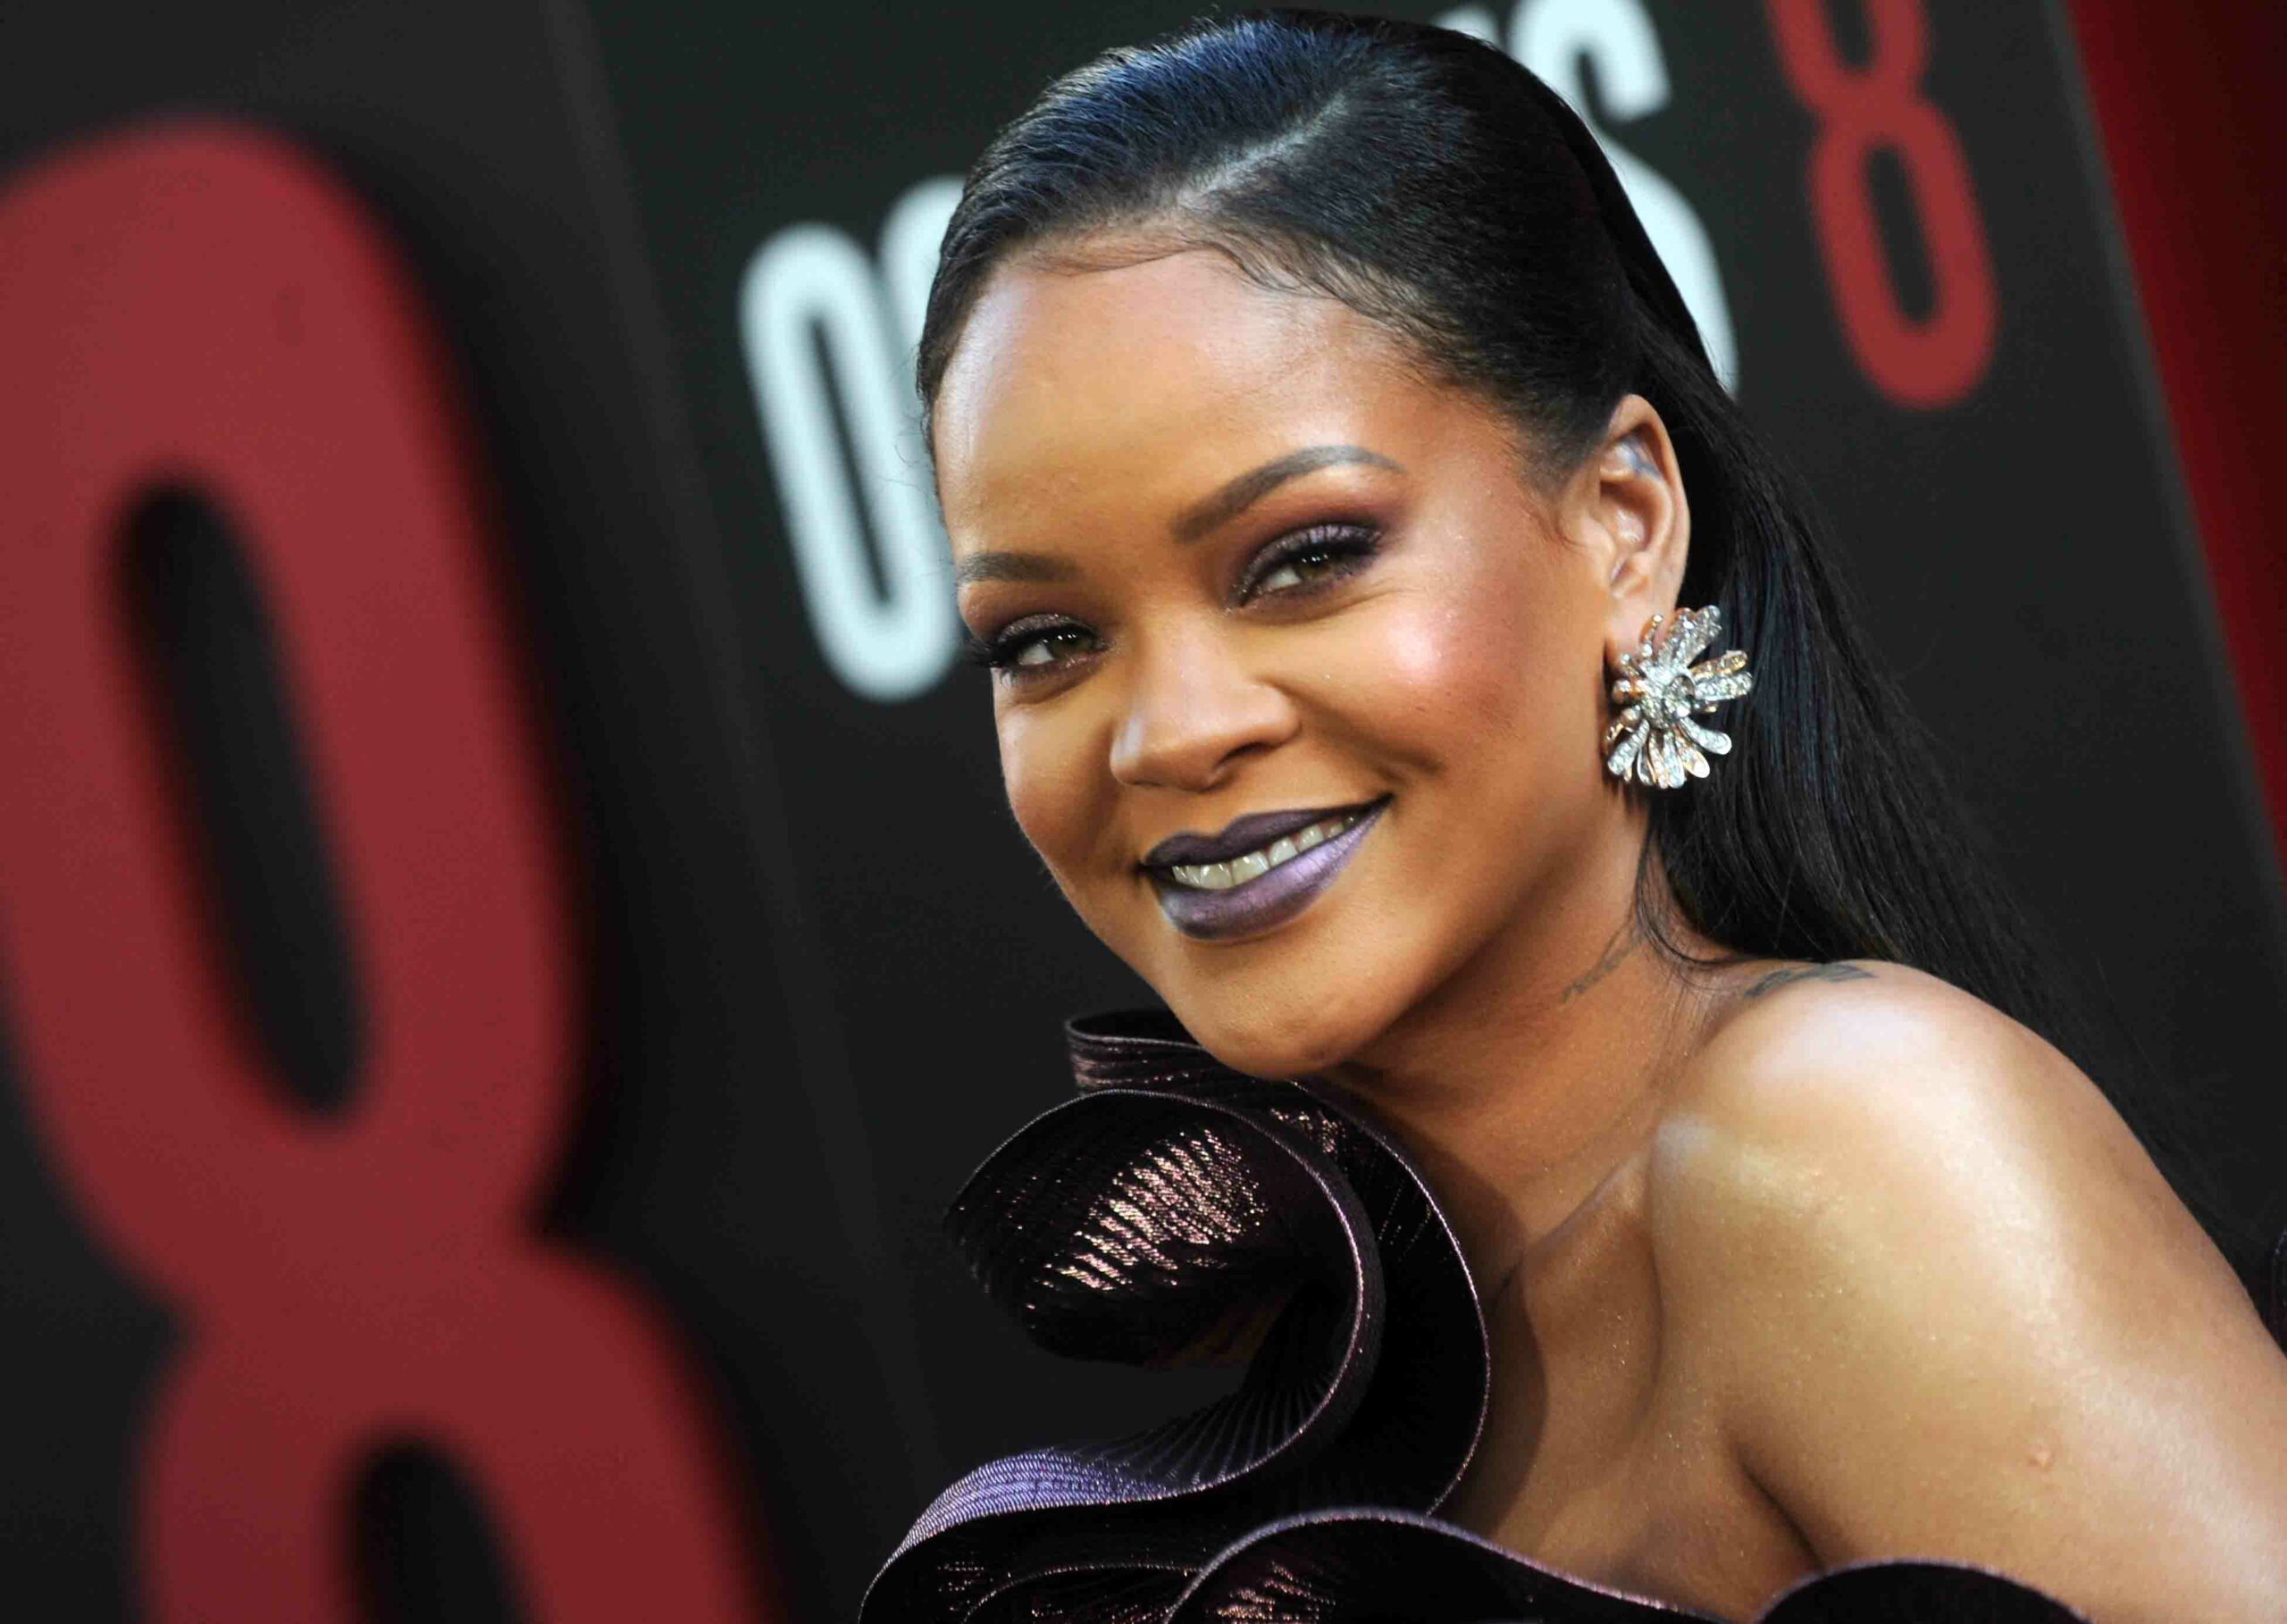 She’s back! Rihanna a anunțat că revine cu album nou. La ce să te aștepți?